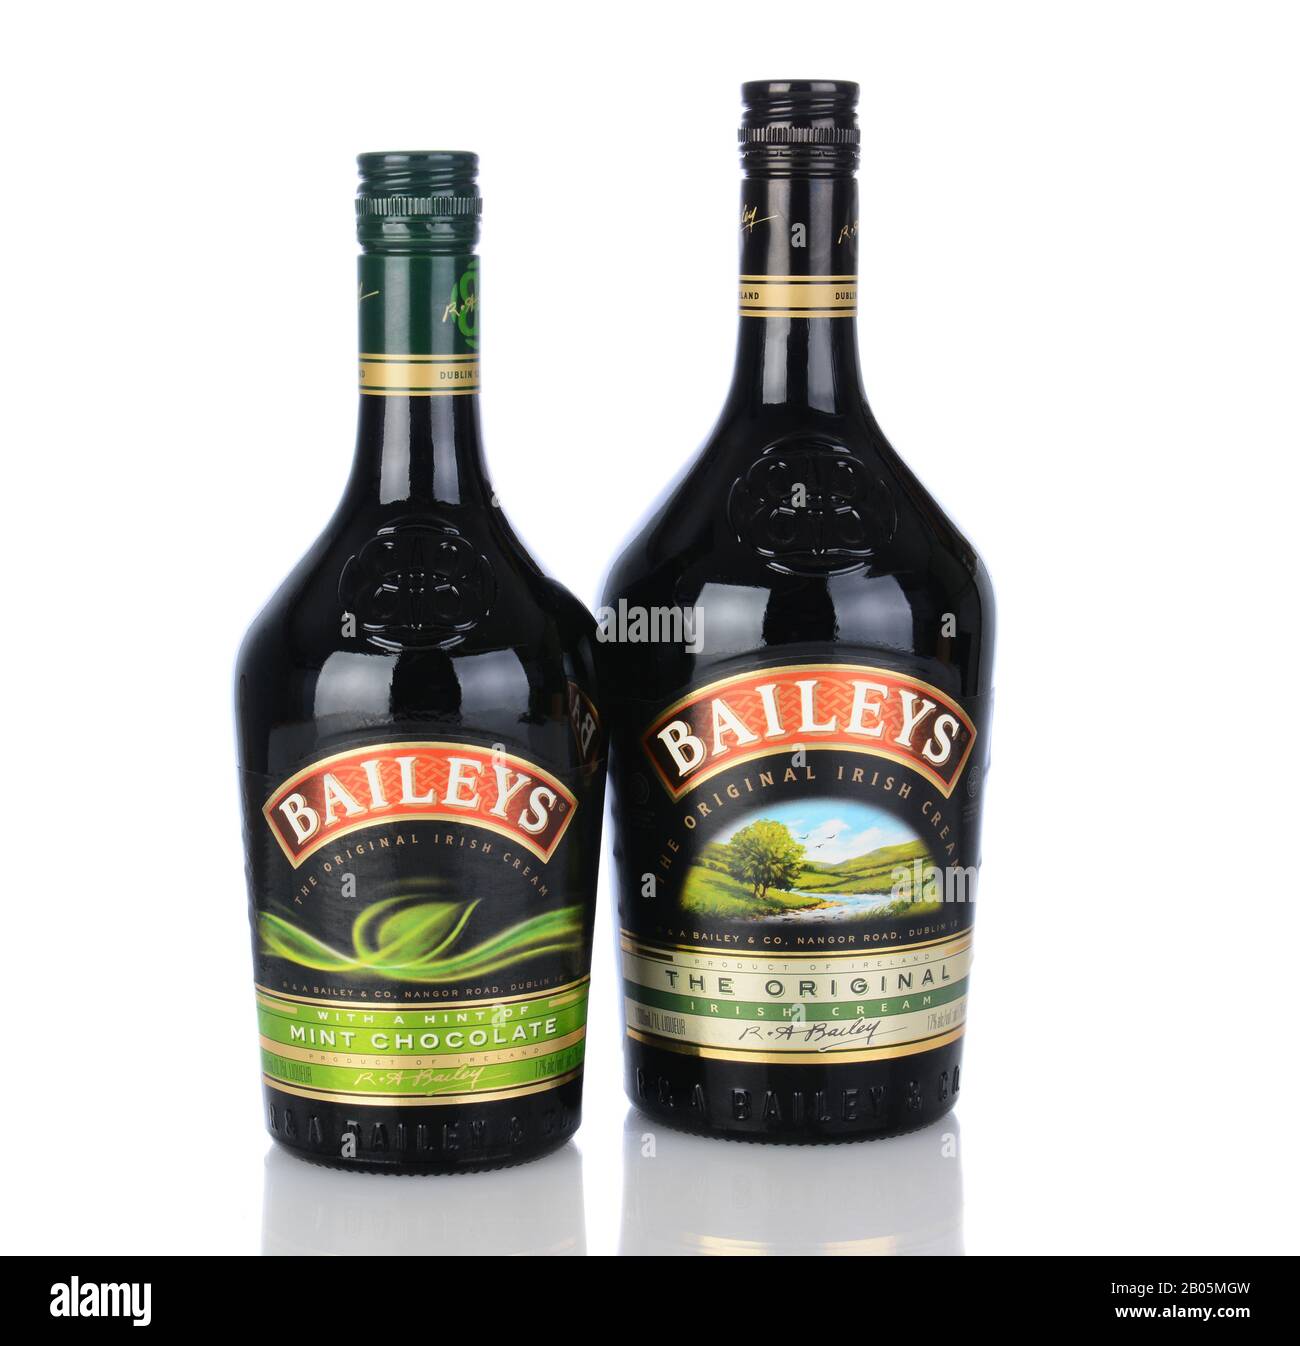 Irvine, CA - 11 gennaio 2013: Una bottiglia di crema irlandese Baileys e Liquore al cioccolato Mint. Baileys, introdotto nel 1974, fu la prima Crema irlandese a b Foto Stock